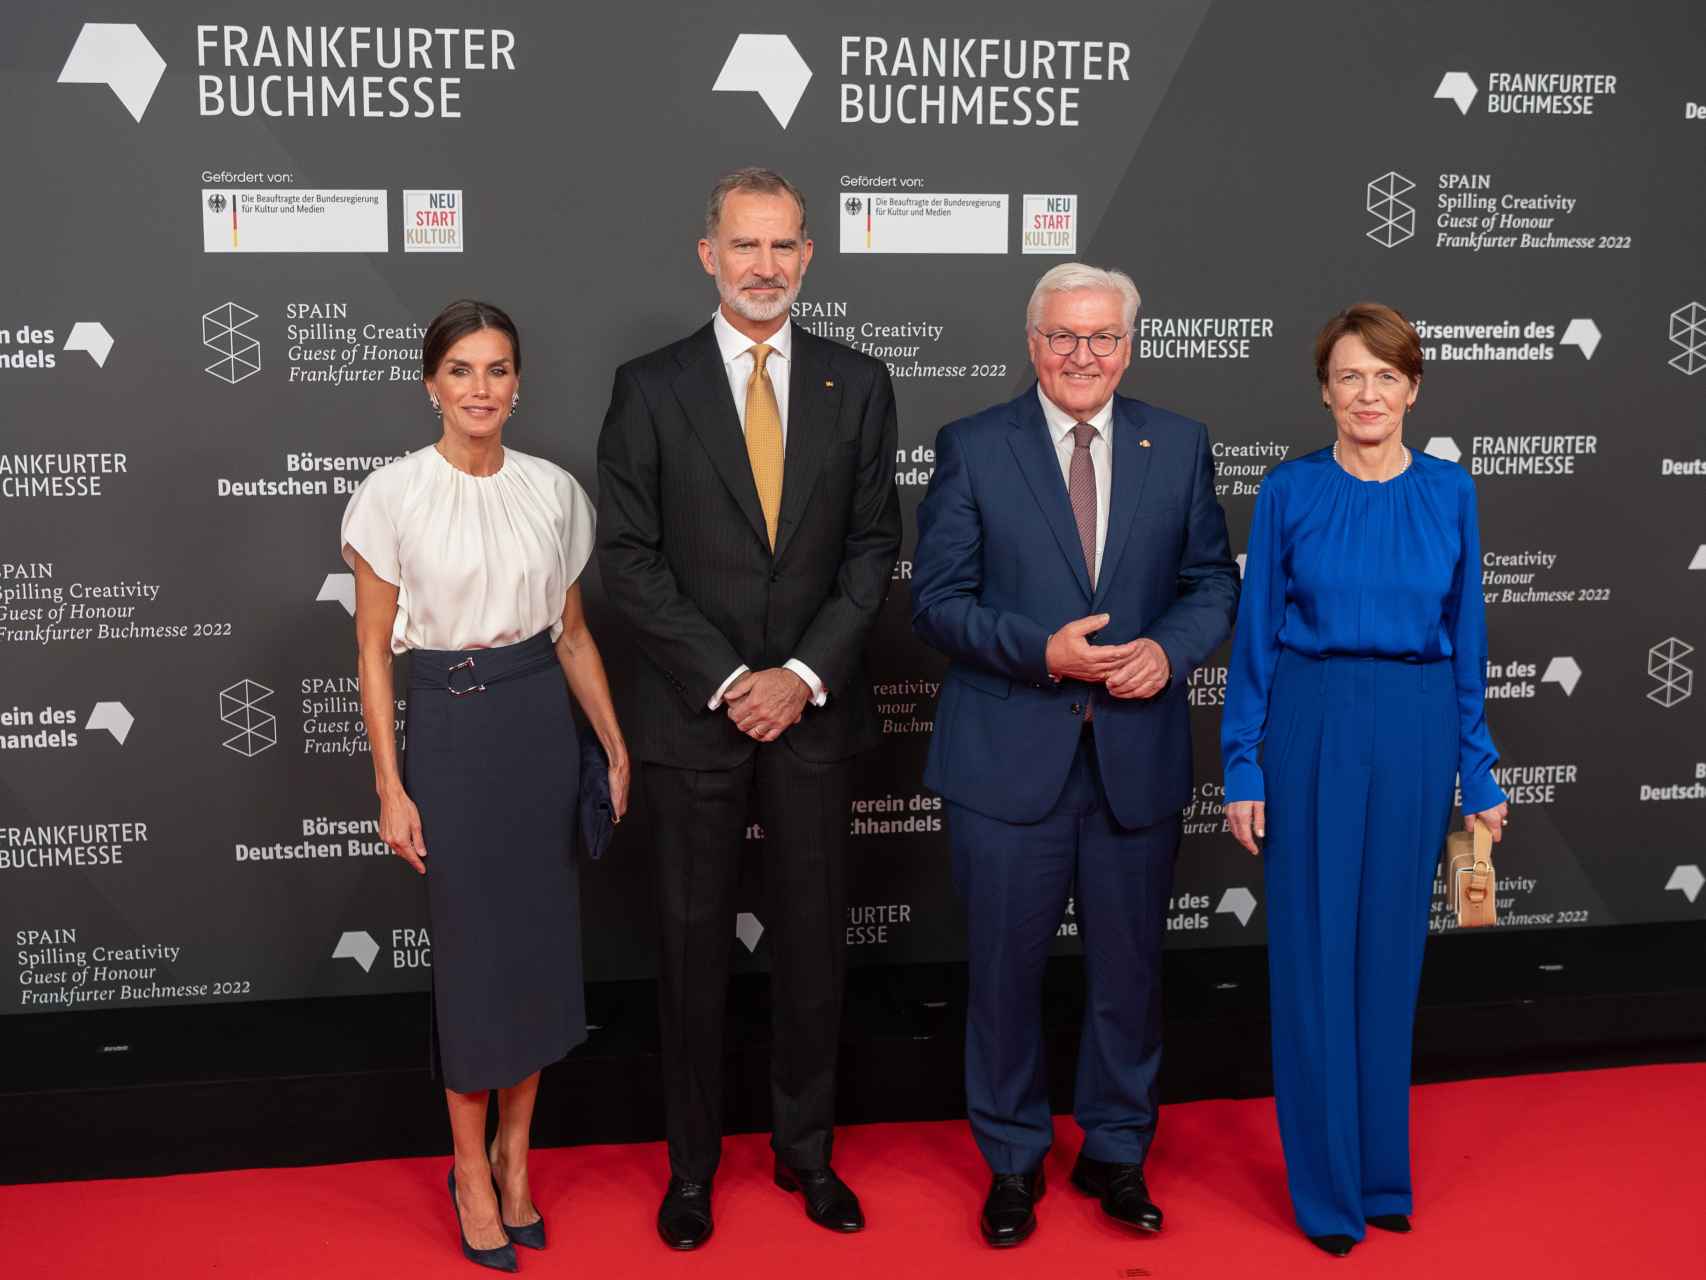 Los Reyes junto al presidente de Alemania y su esposa.